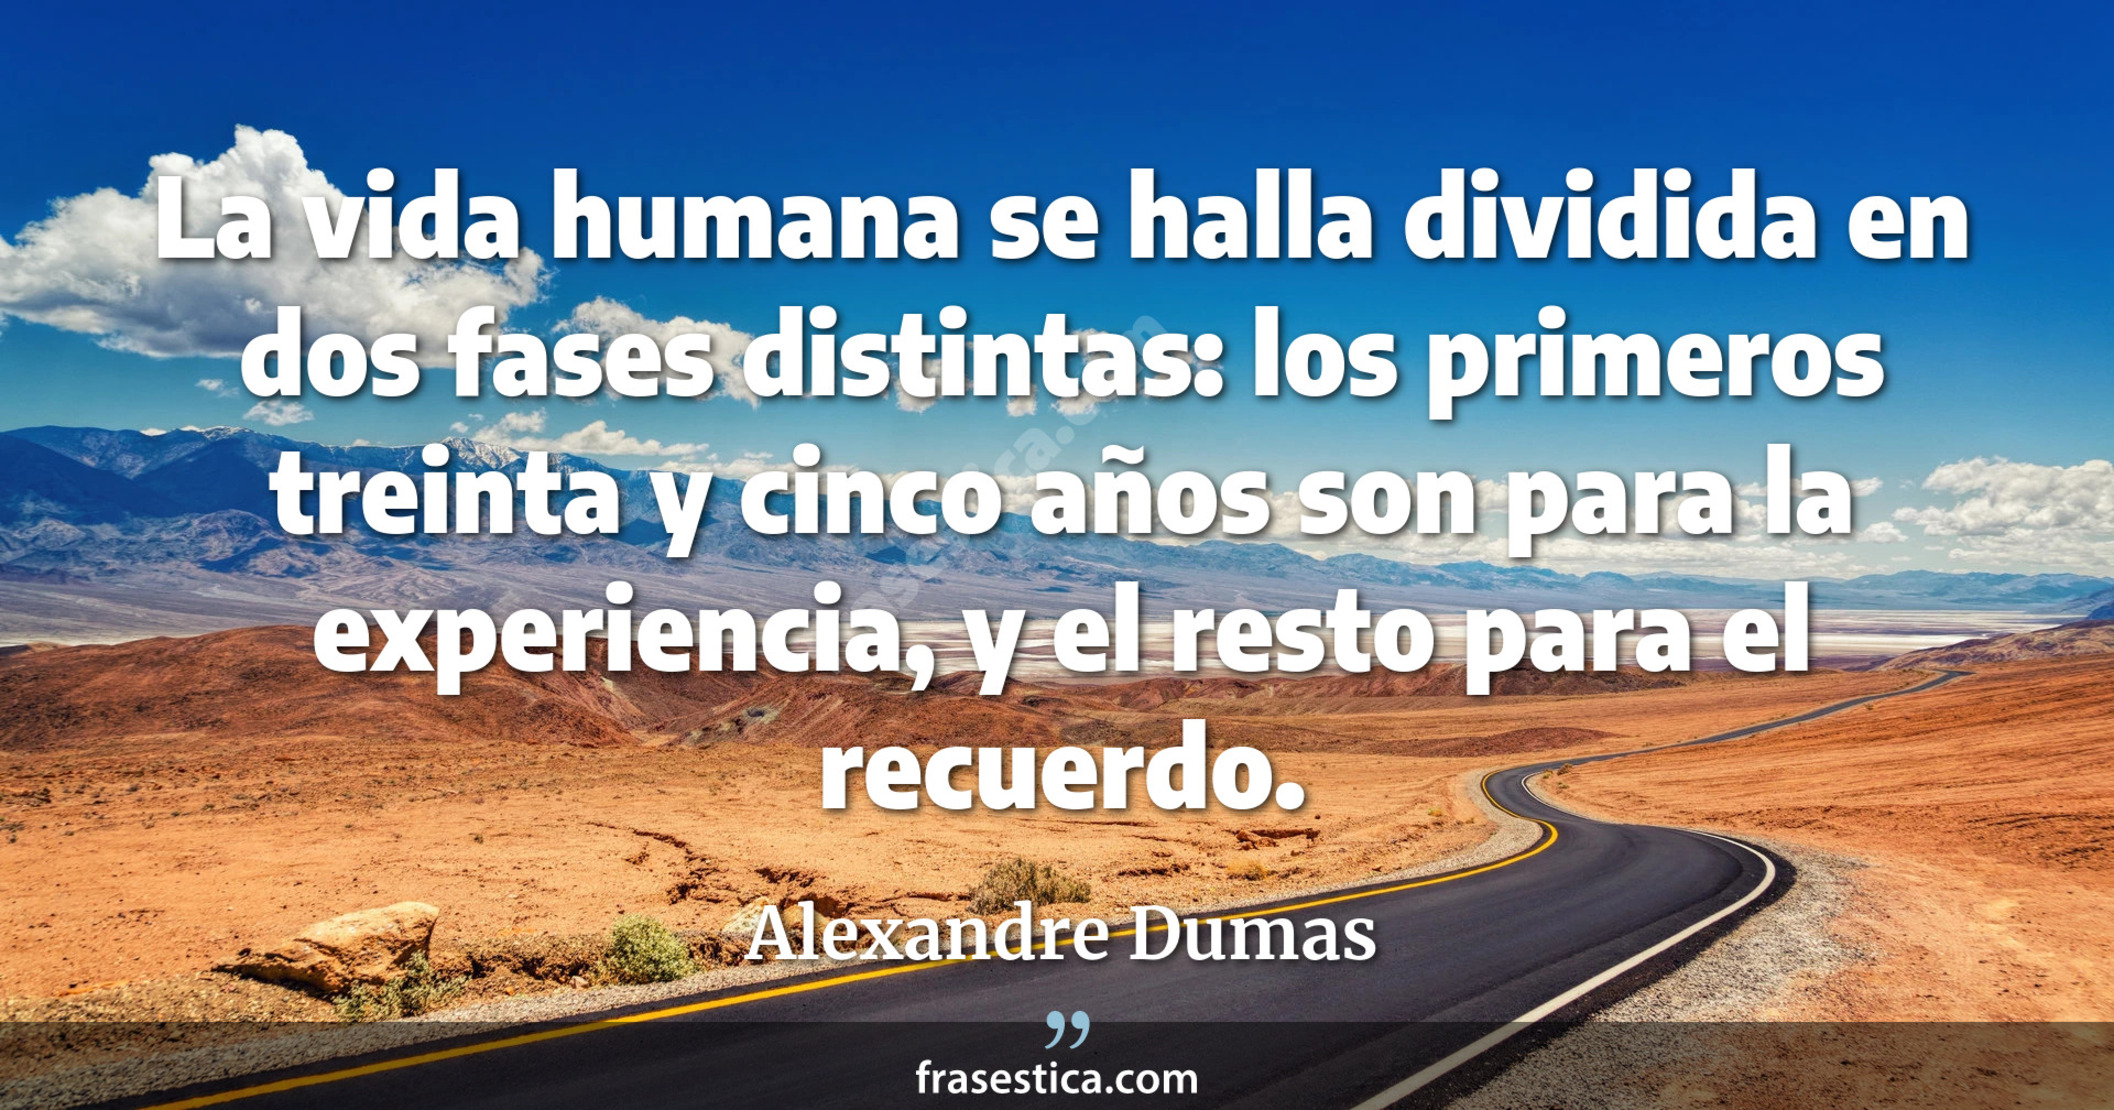 La vida humana se halla dividida en dos fases distintas: los primeros treinta y cinco años son para la experiencia, y el resto para el recuerdo. - Alexandre Dumas